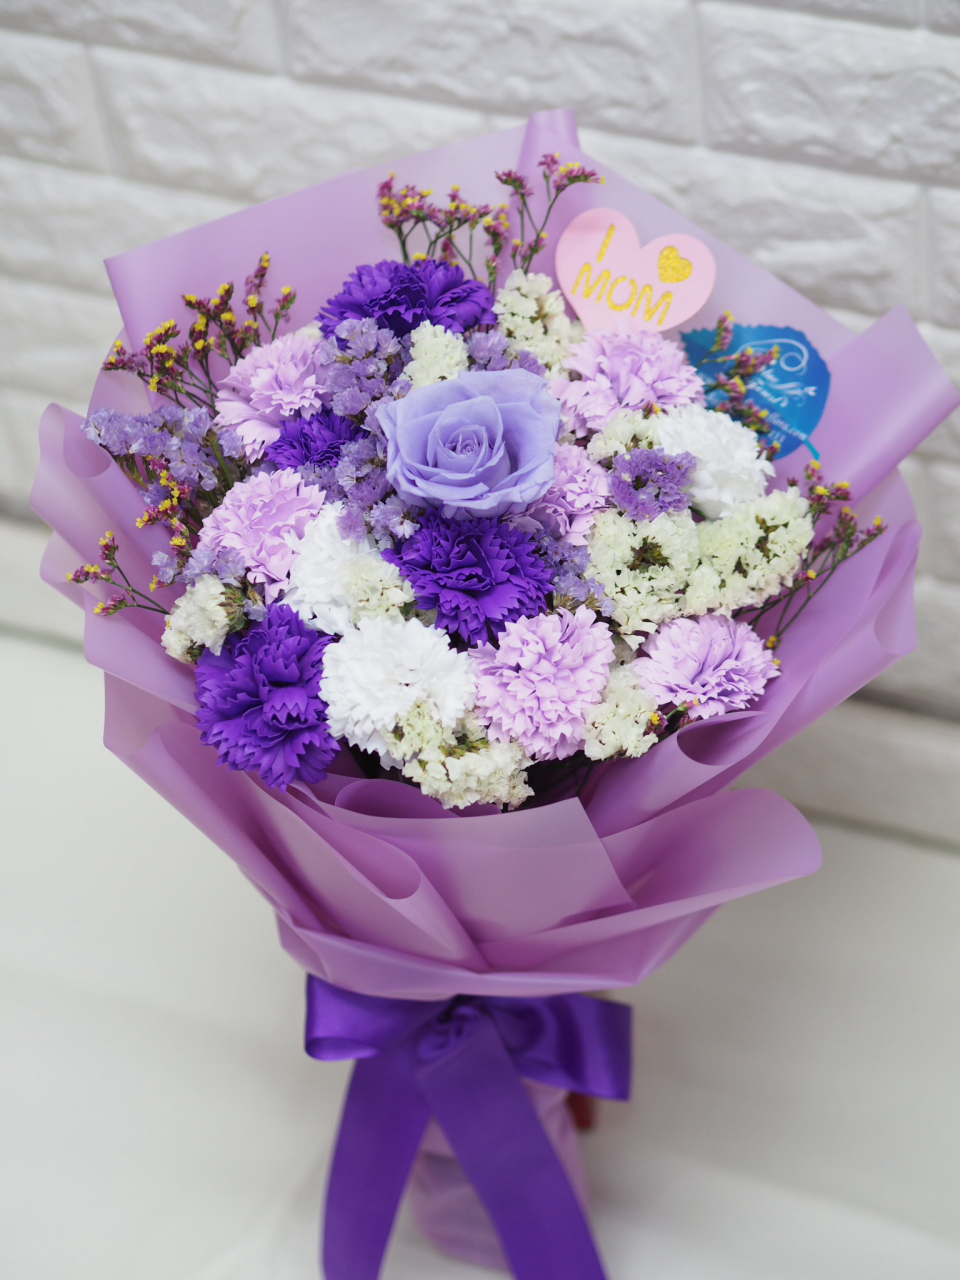 可永久保存 玫瑰保鮮花配康乃馨番梘花花束 淺紫系 Blue Forest Florist